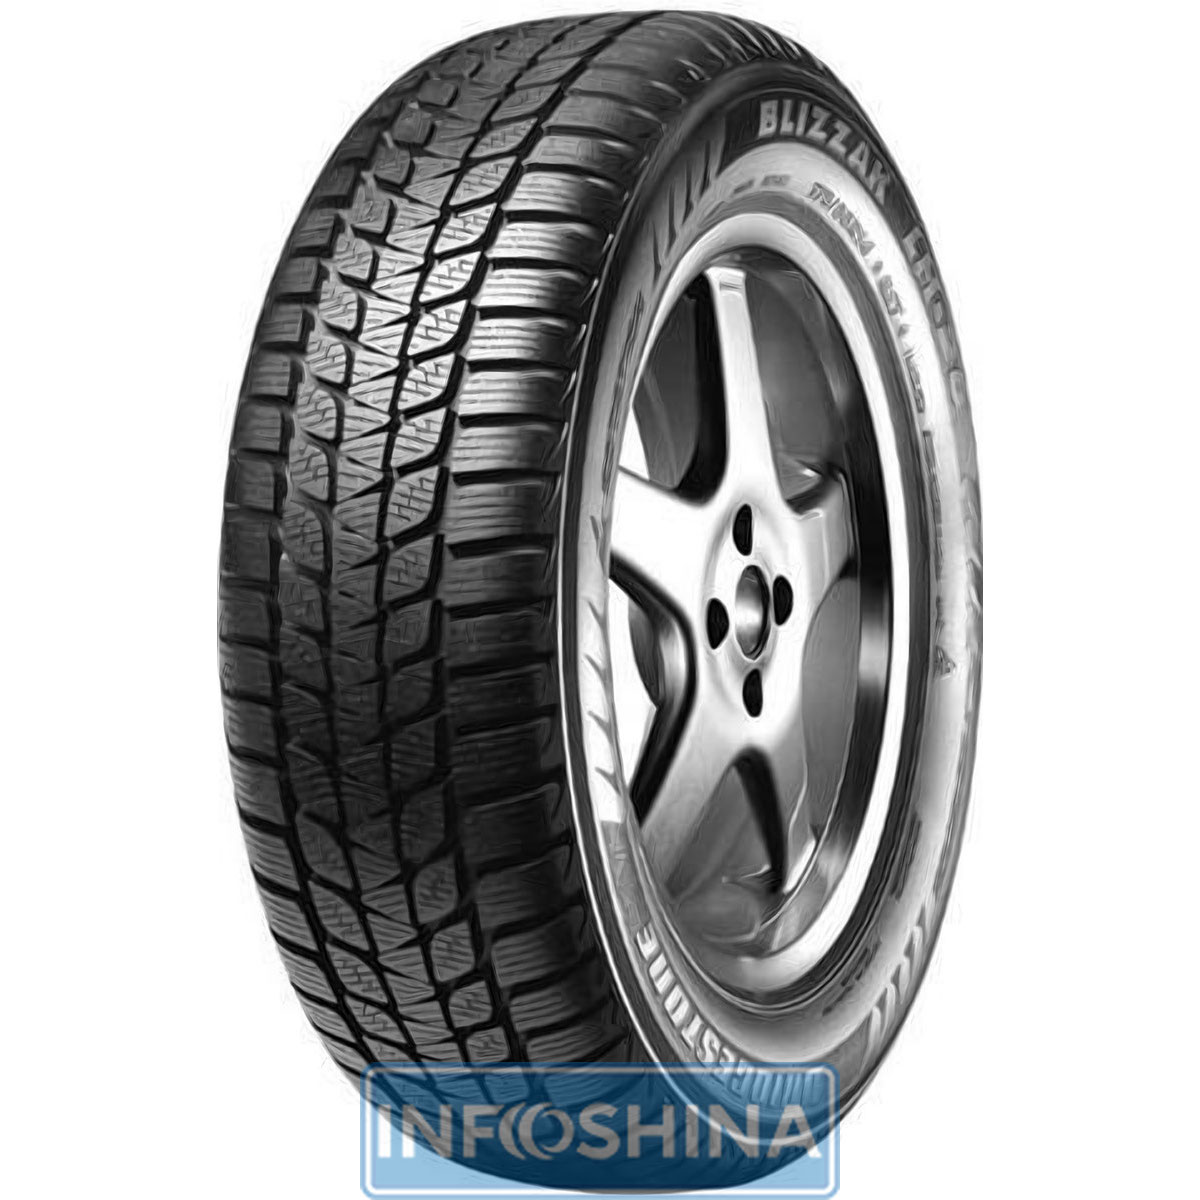 Купить шины Bridgestone Blizzak LM-20 175/65 R13 80T